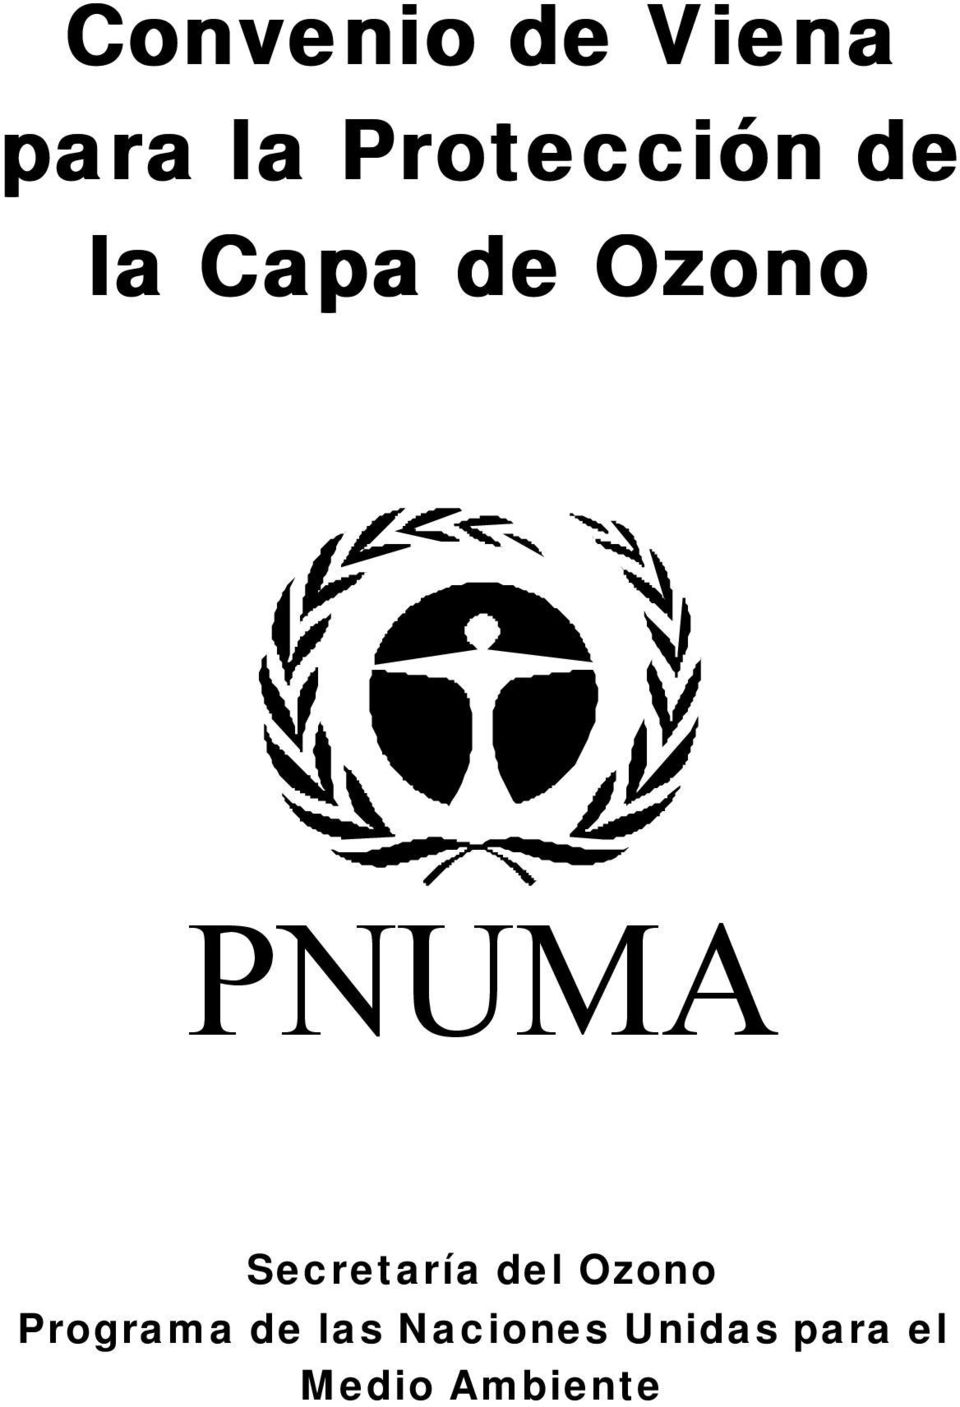 PNUMA Secretaría del Ozono